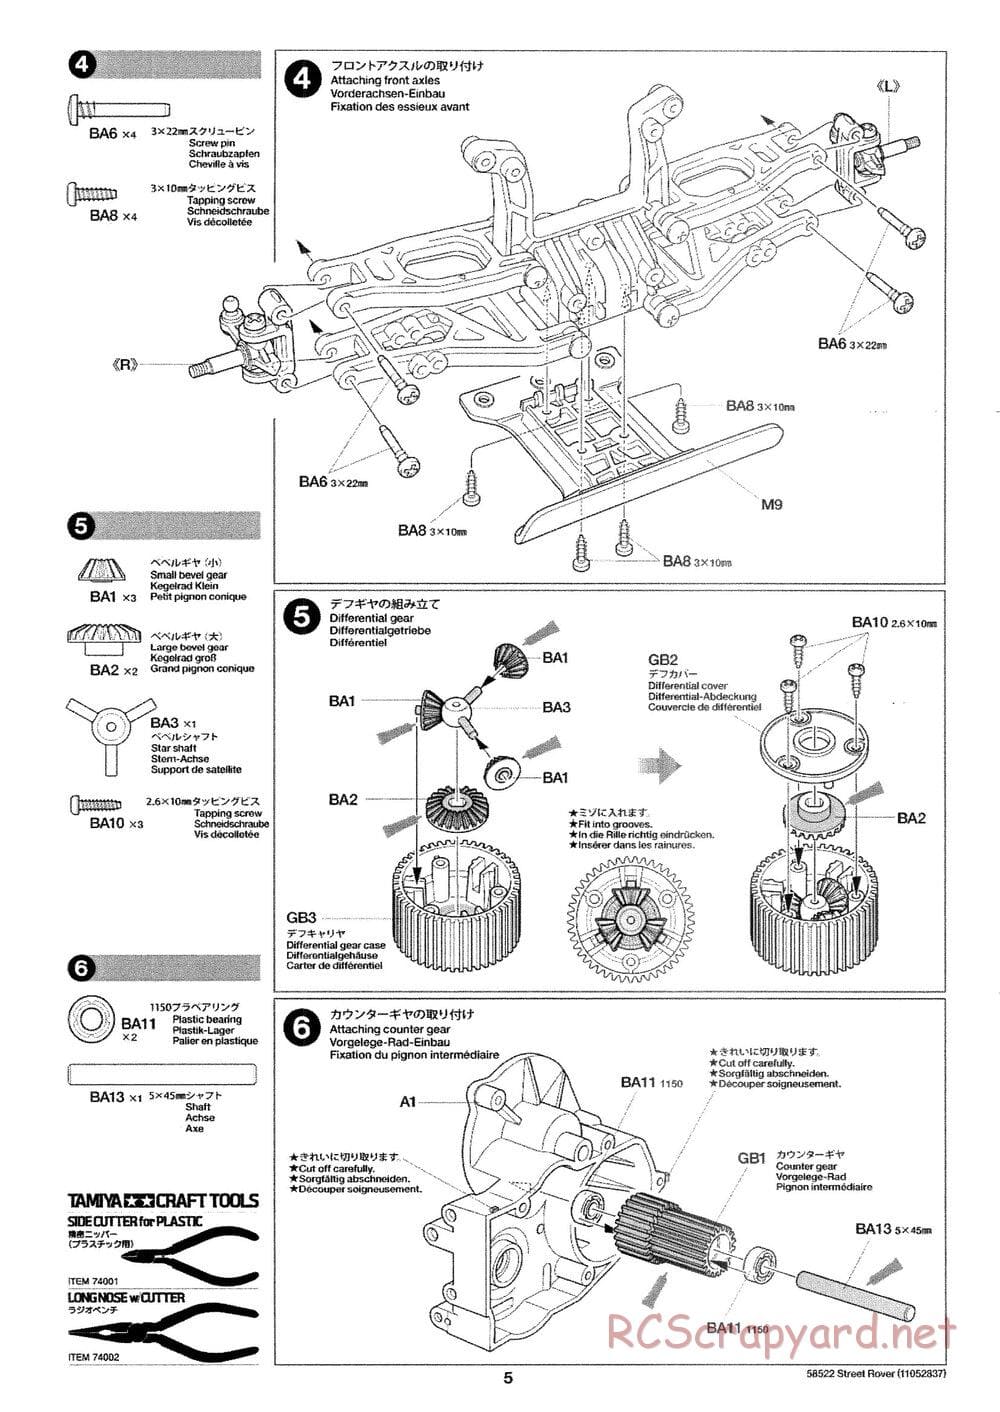 Tamiya - Street Rover Chassis - Manual - Page 6